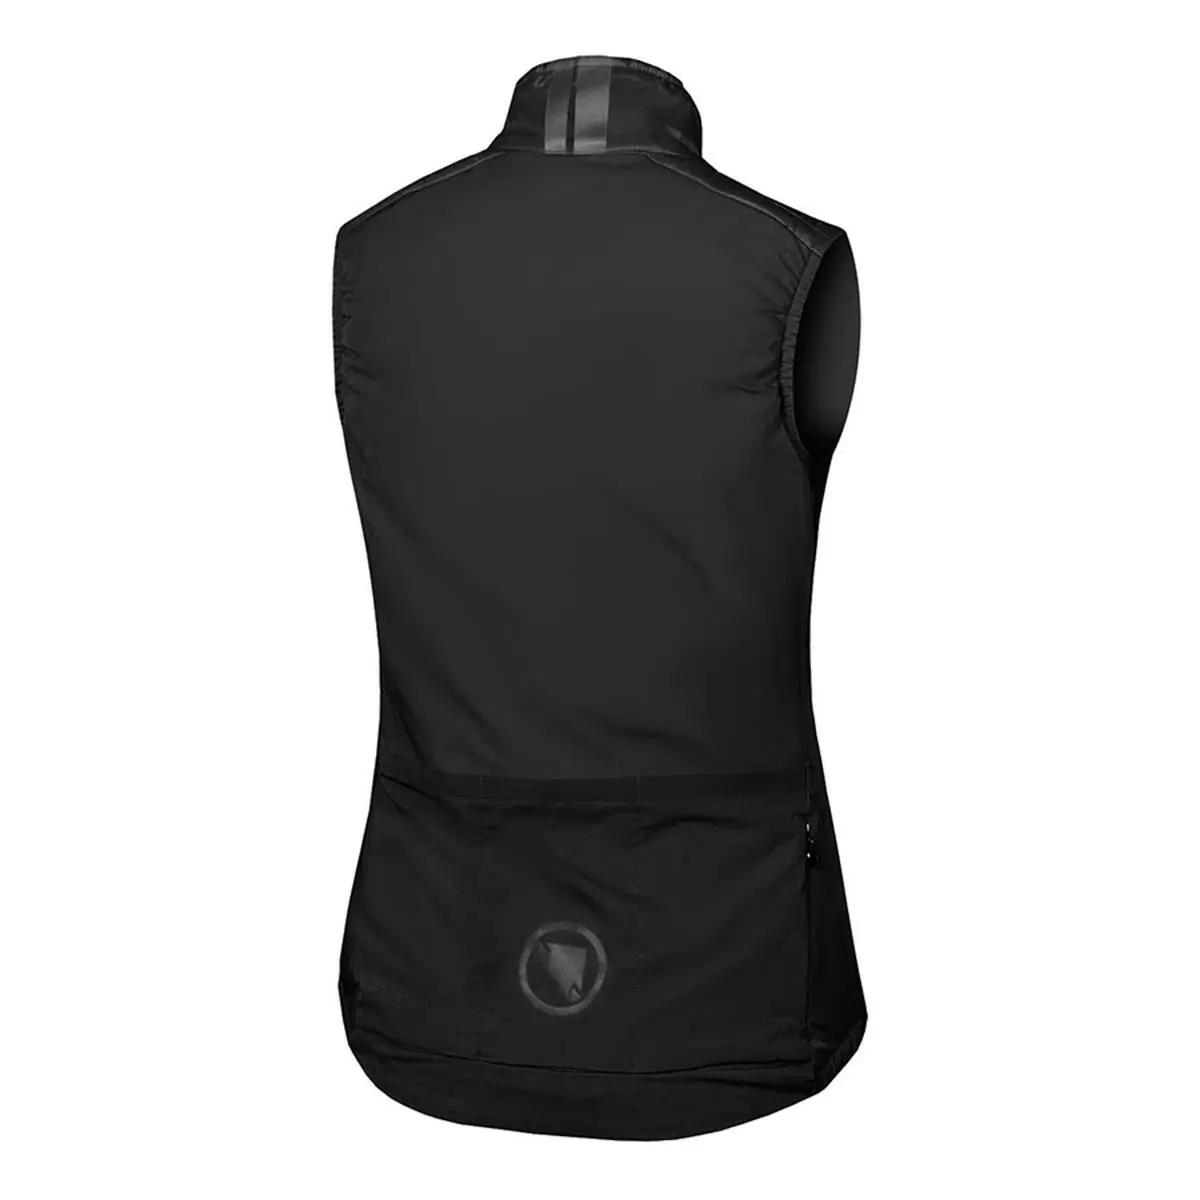 Pro SL PrimaLoft Rain/Windproof Vest Women's Vest Black size M #1